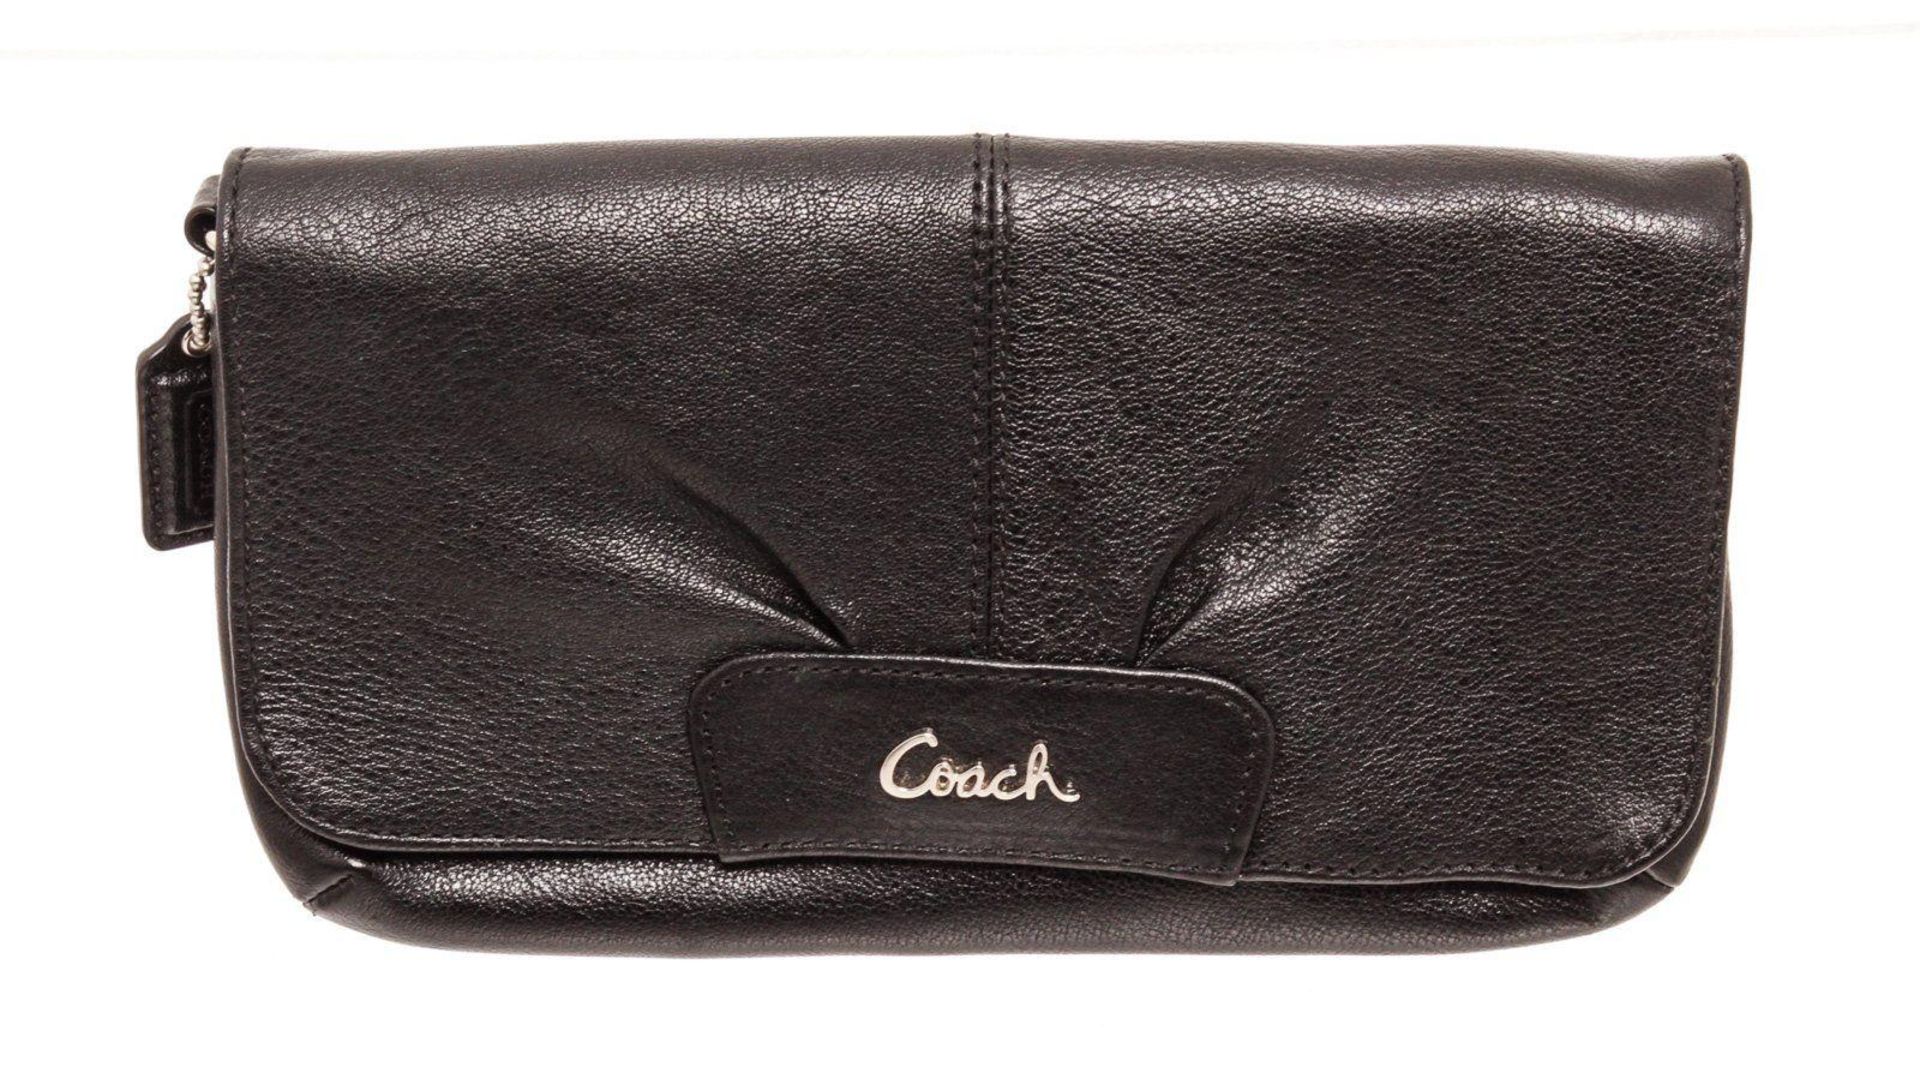 Coach Black Leather Large Flap Wristlet